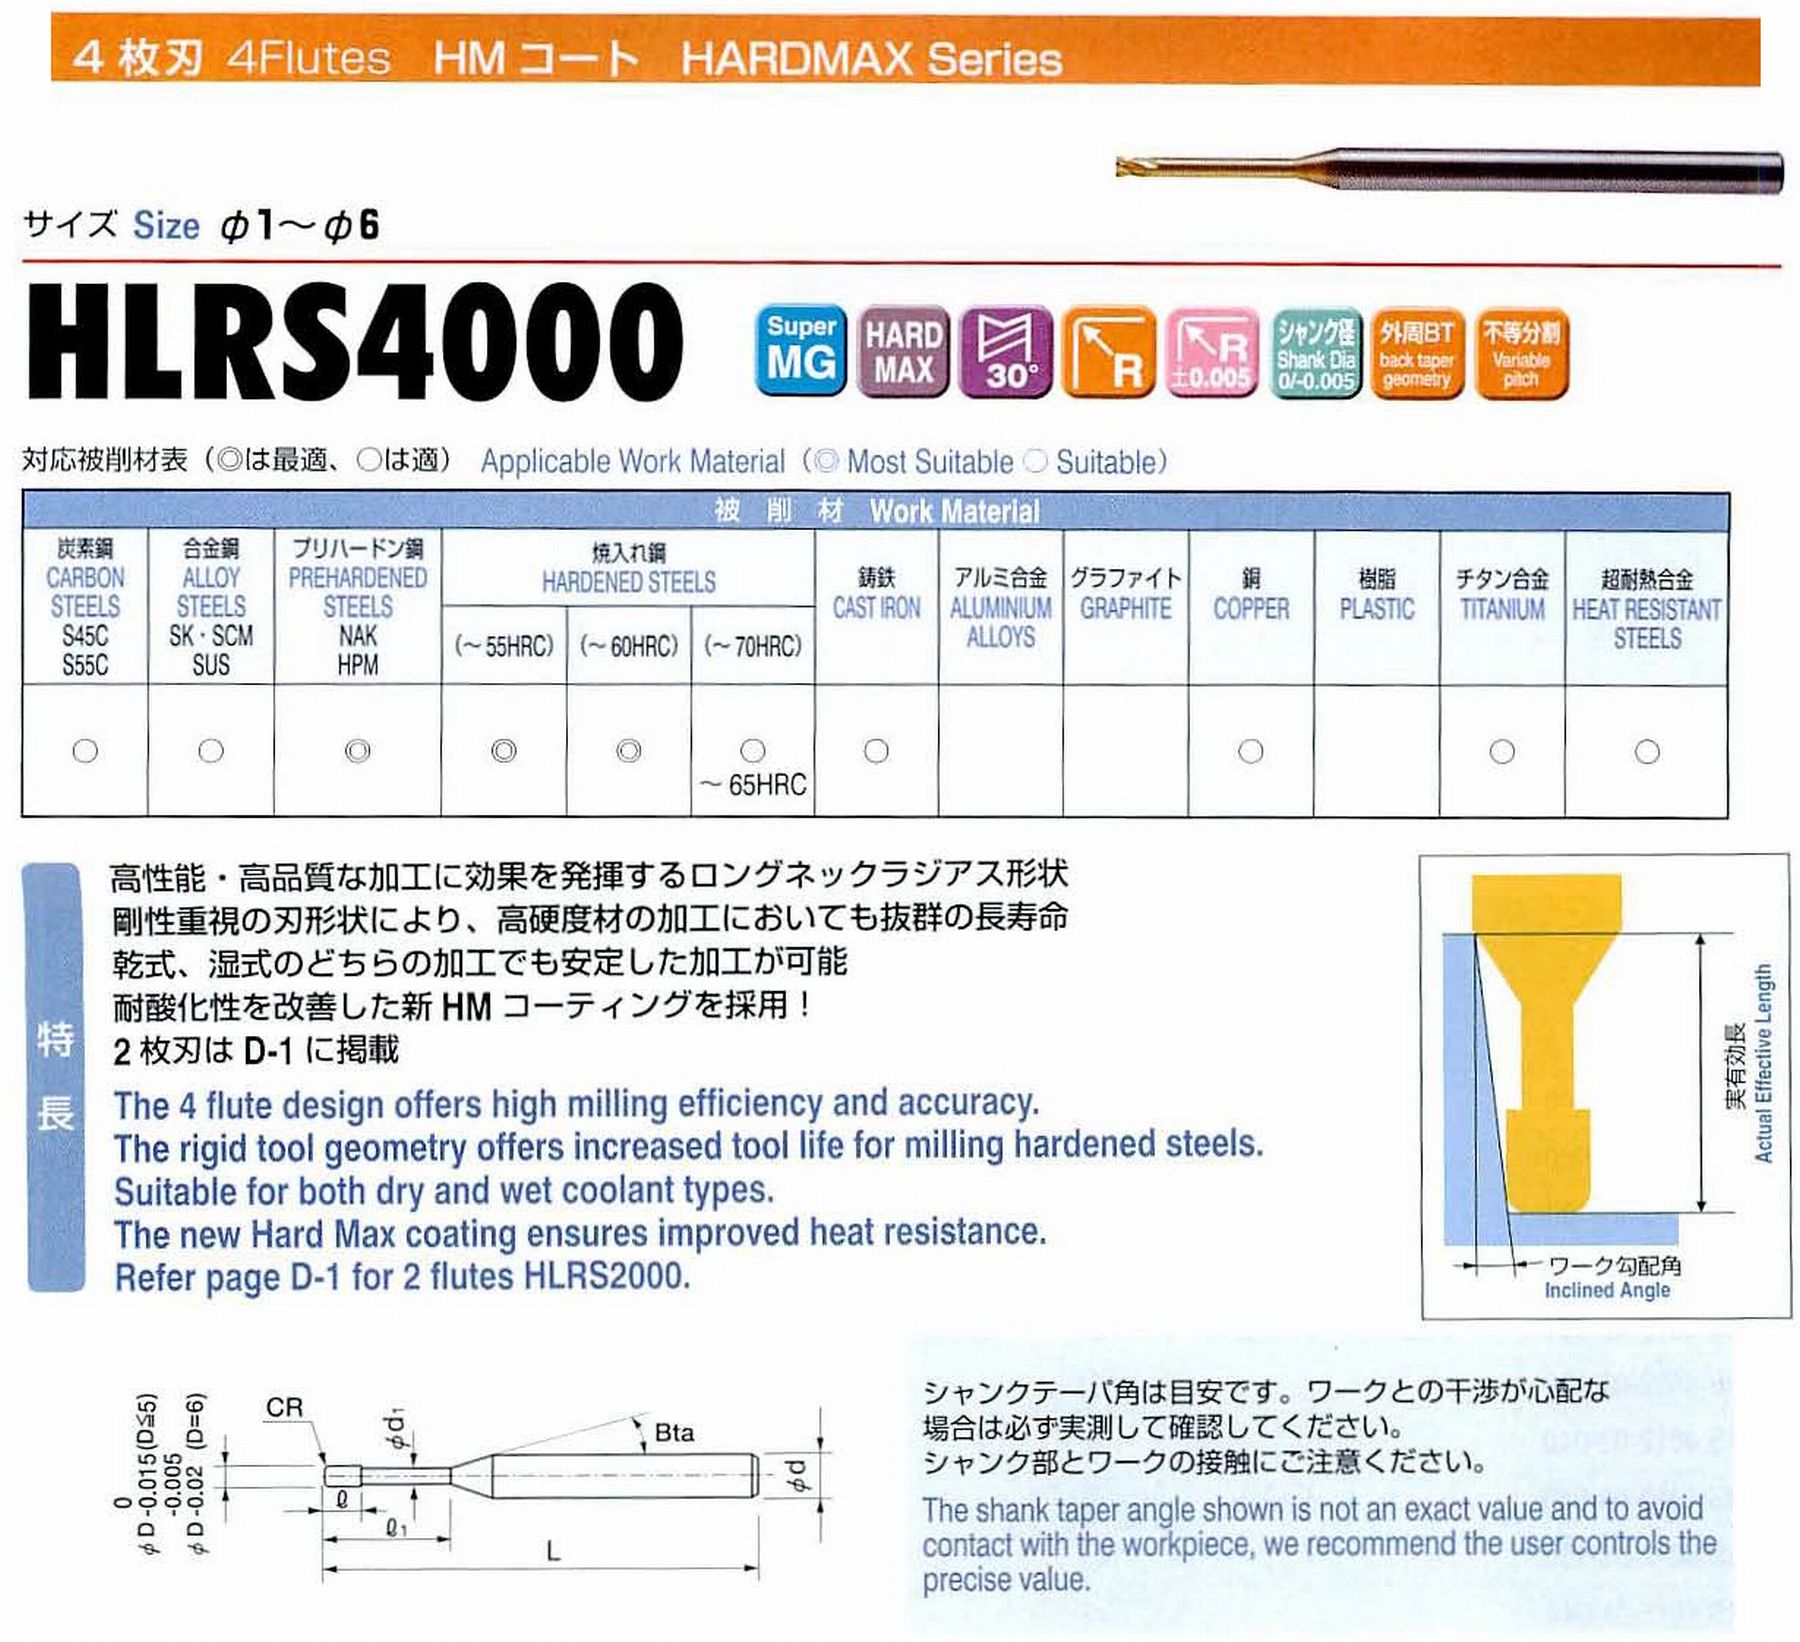 ユニオンツール 4枚刃 HLRS4015-03-060 外径1.5 コーナ半径R0.3 有効長6 刃長1.2 首径1.15 シャンクテーパ角16° 全長50 シャンク径4